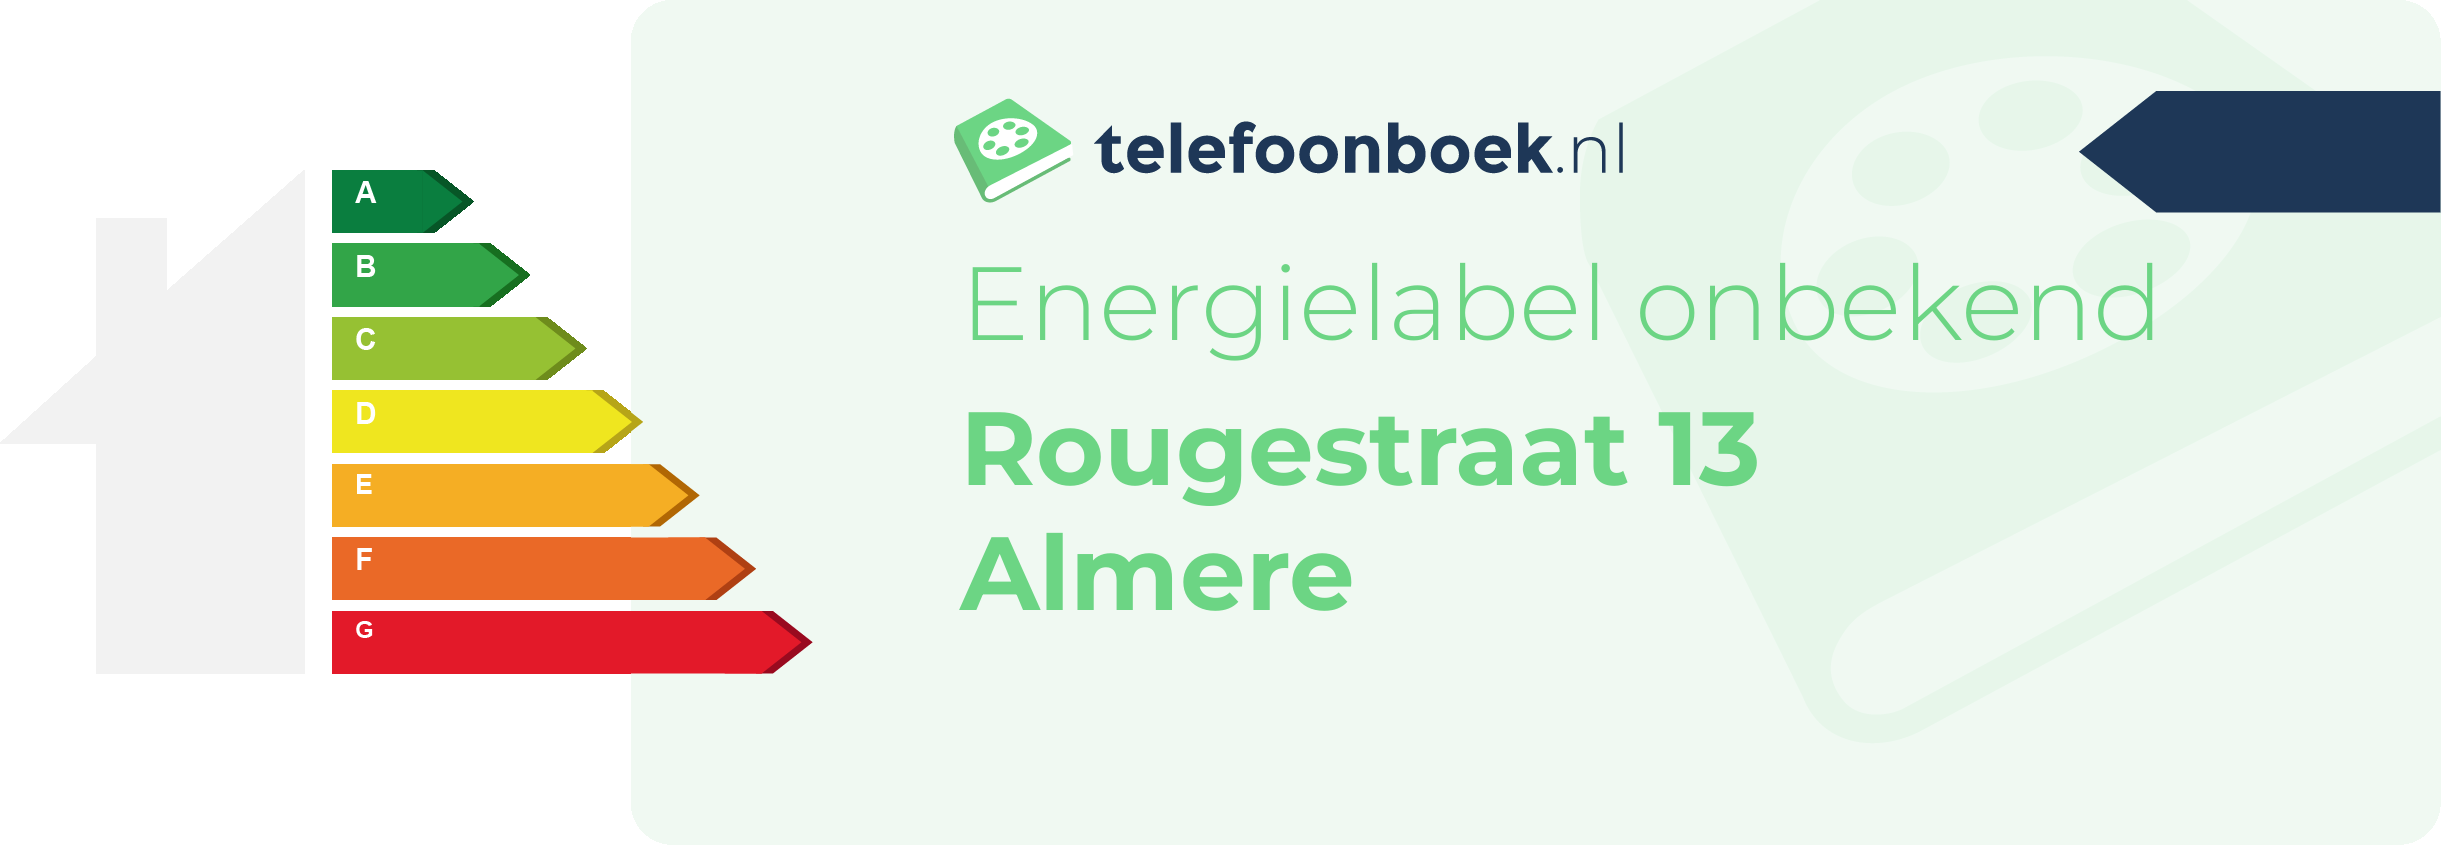 Energielabel Rougestraat 13 Almere